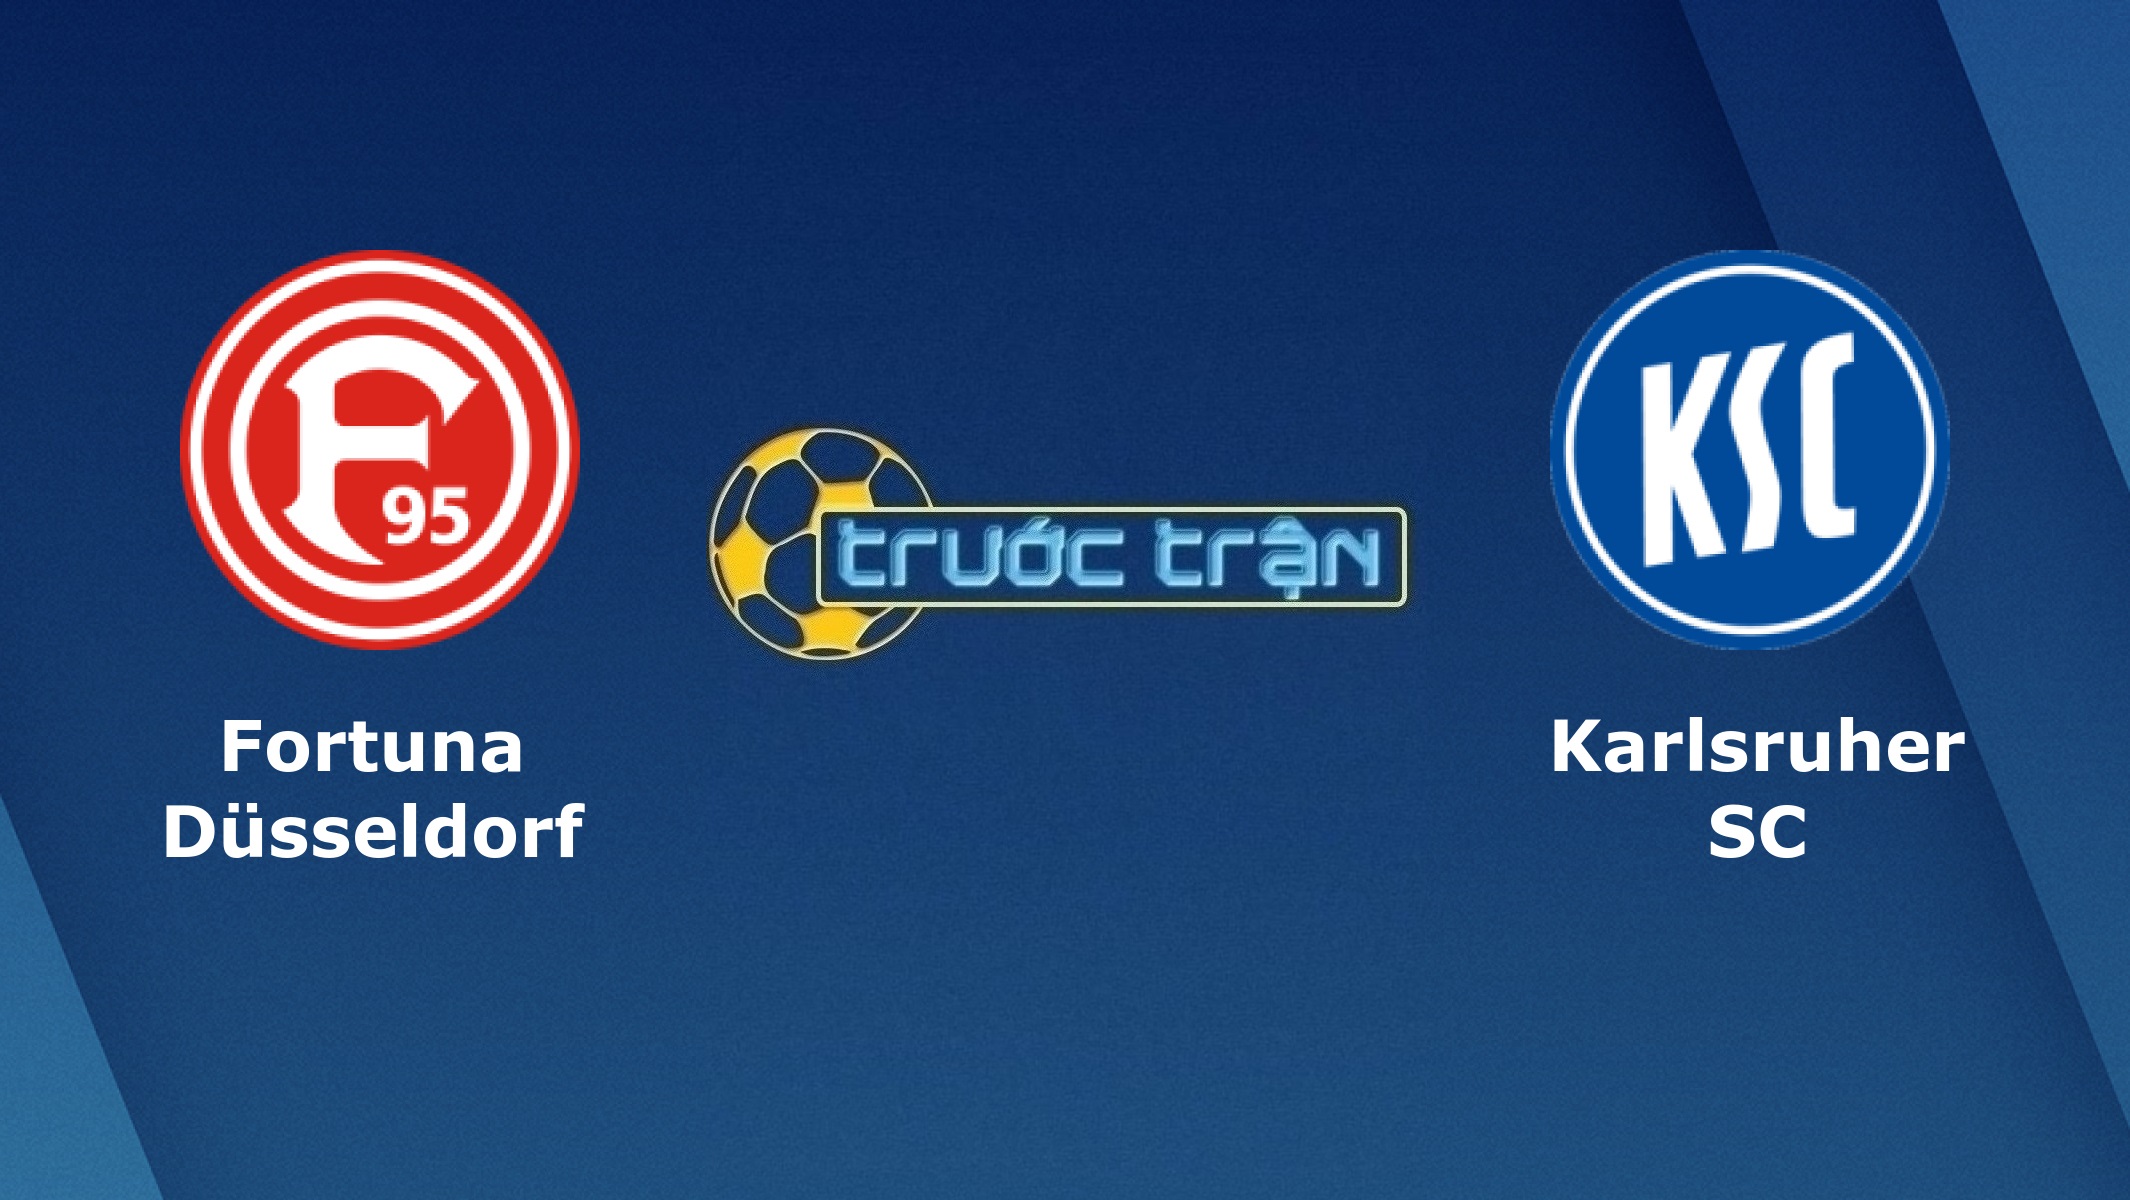 Fortuna Dusseldorf vs Karlsruher – Tip kèo bóng đá hôm nay – 01h30 04/05/2021